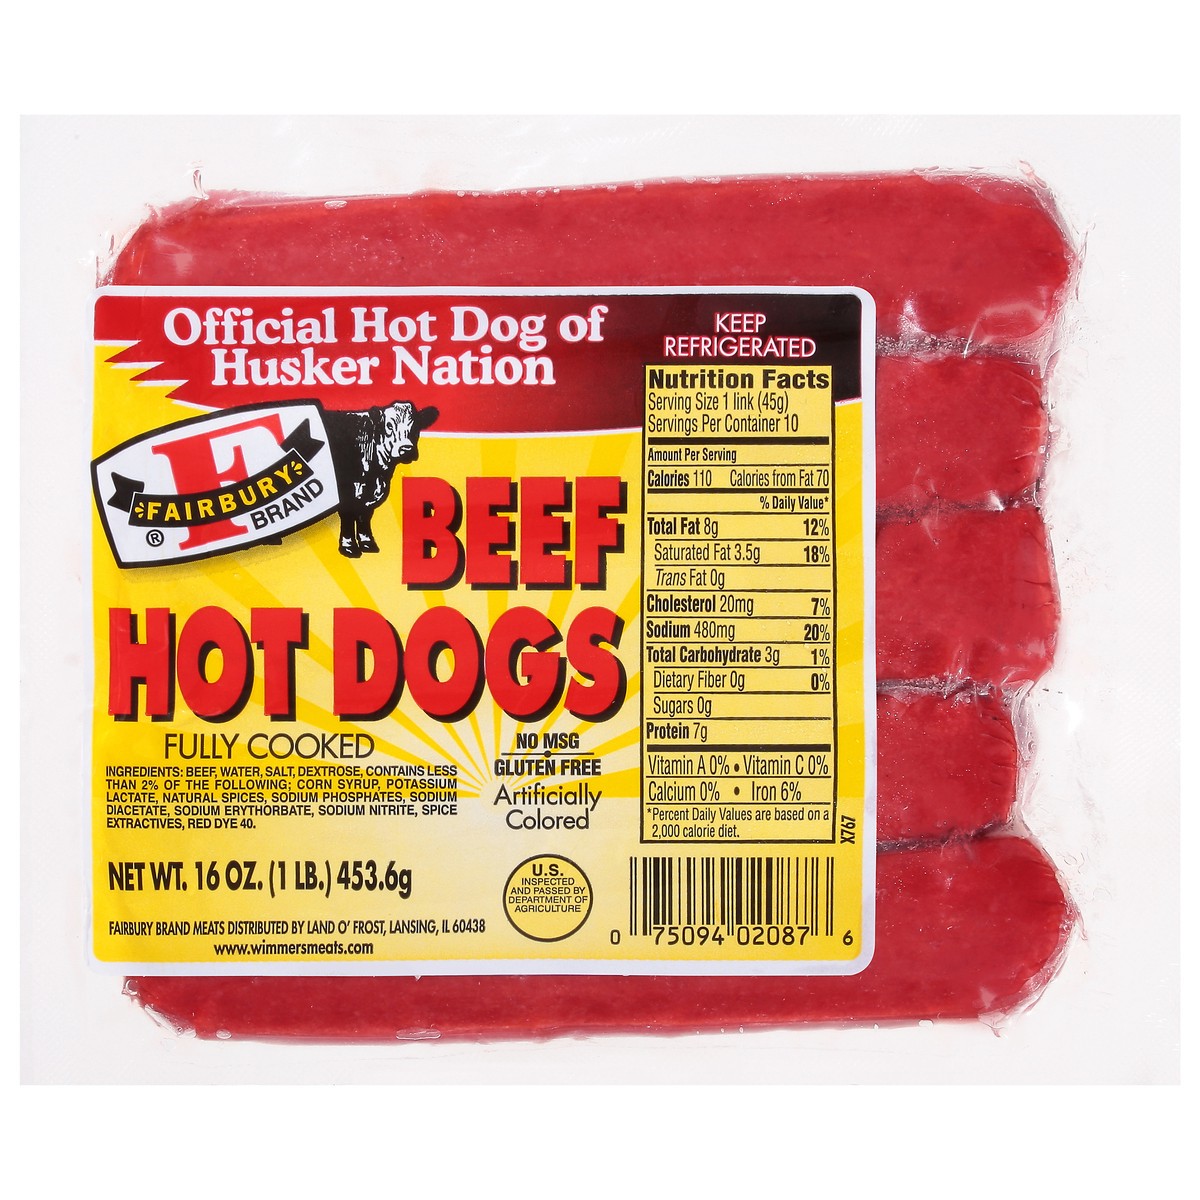 slide 1 of 9, Fairbury Beef Hot Dogs 16 oz, 16 oz